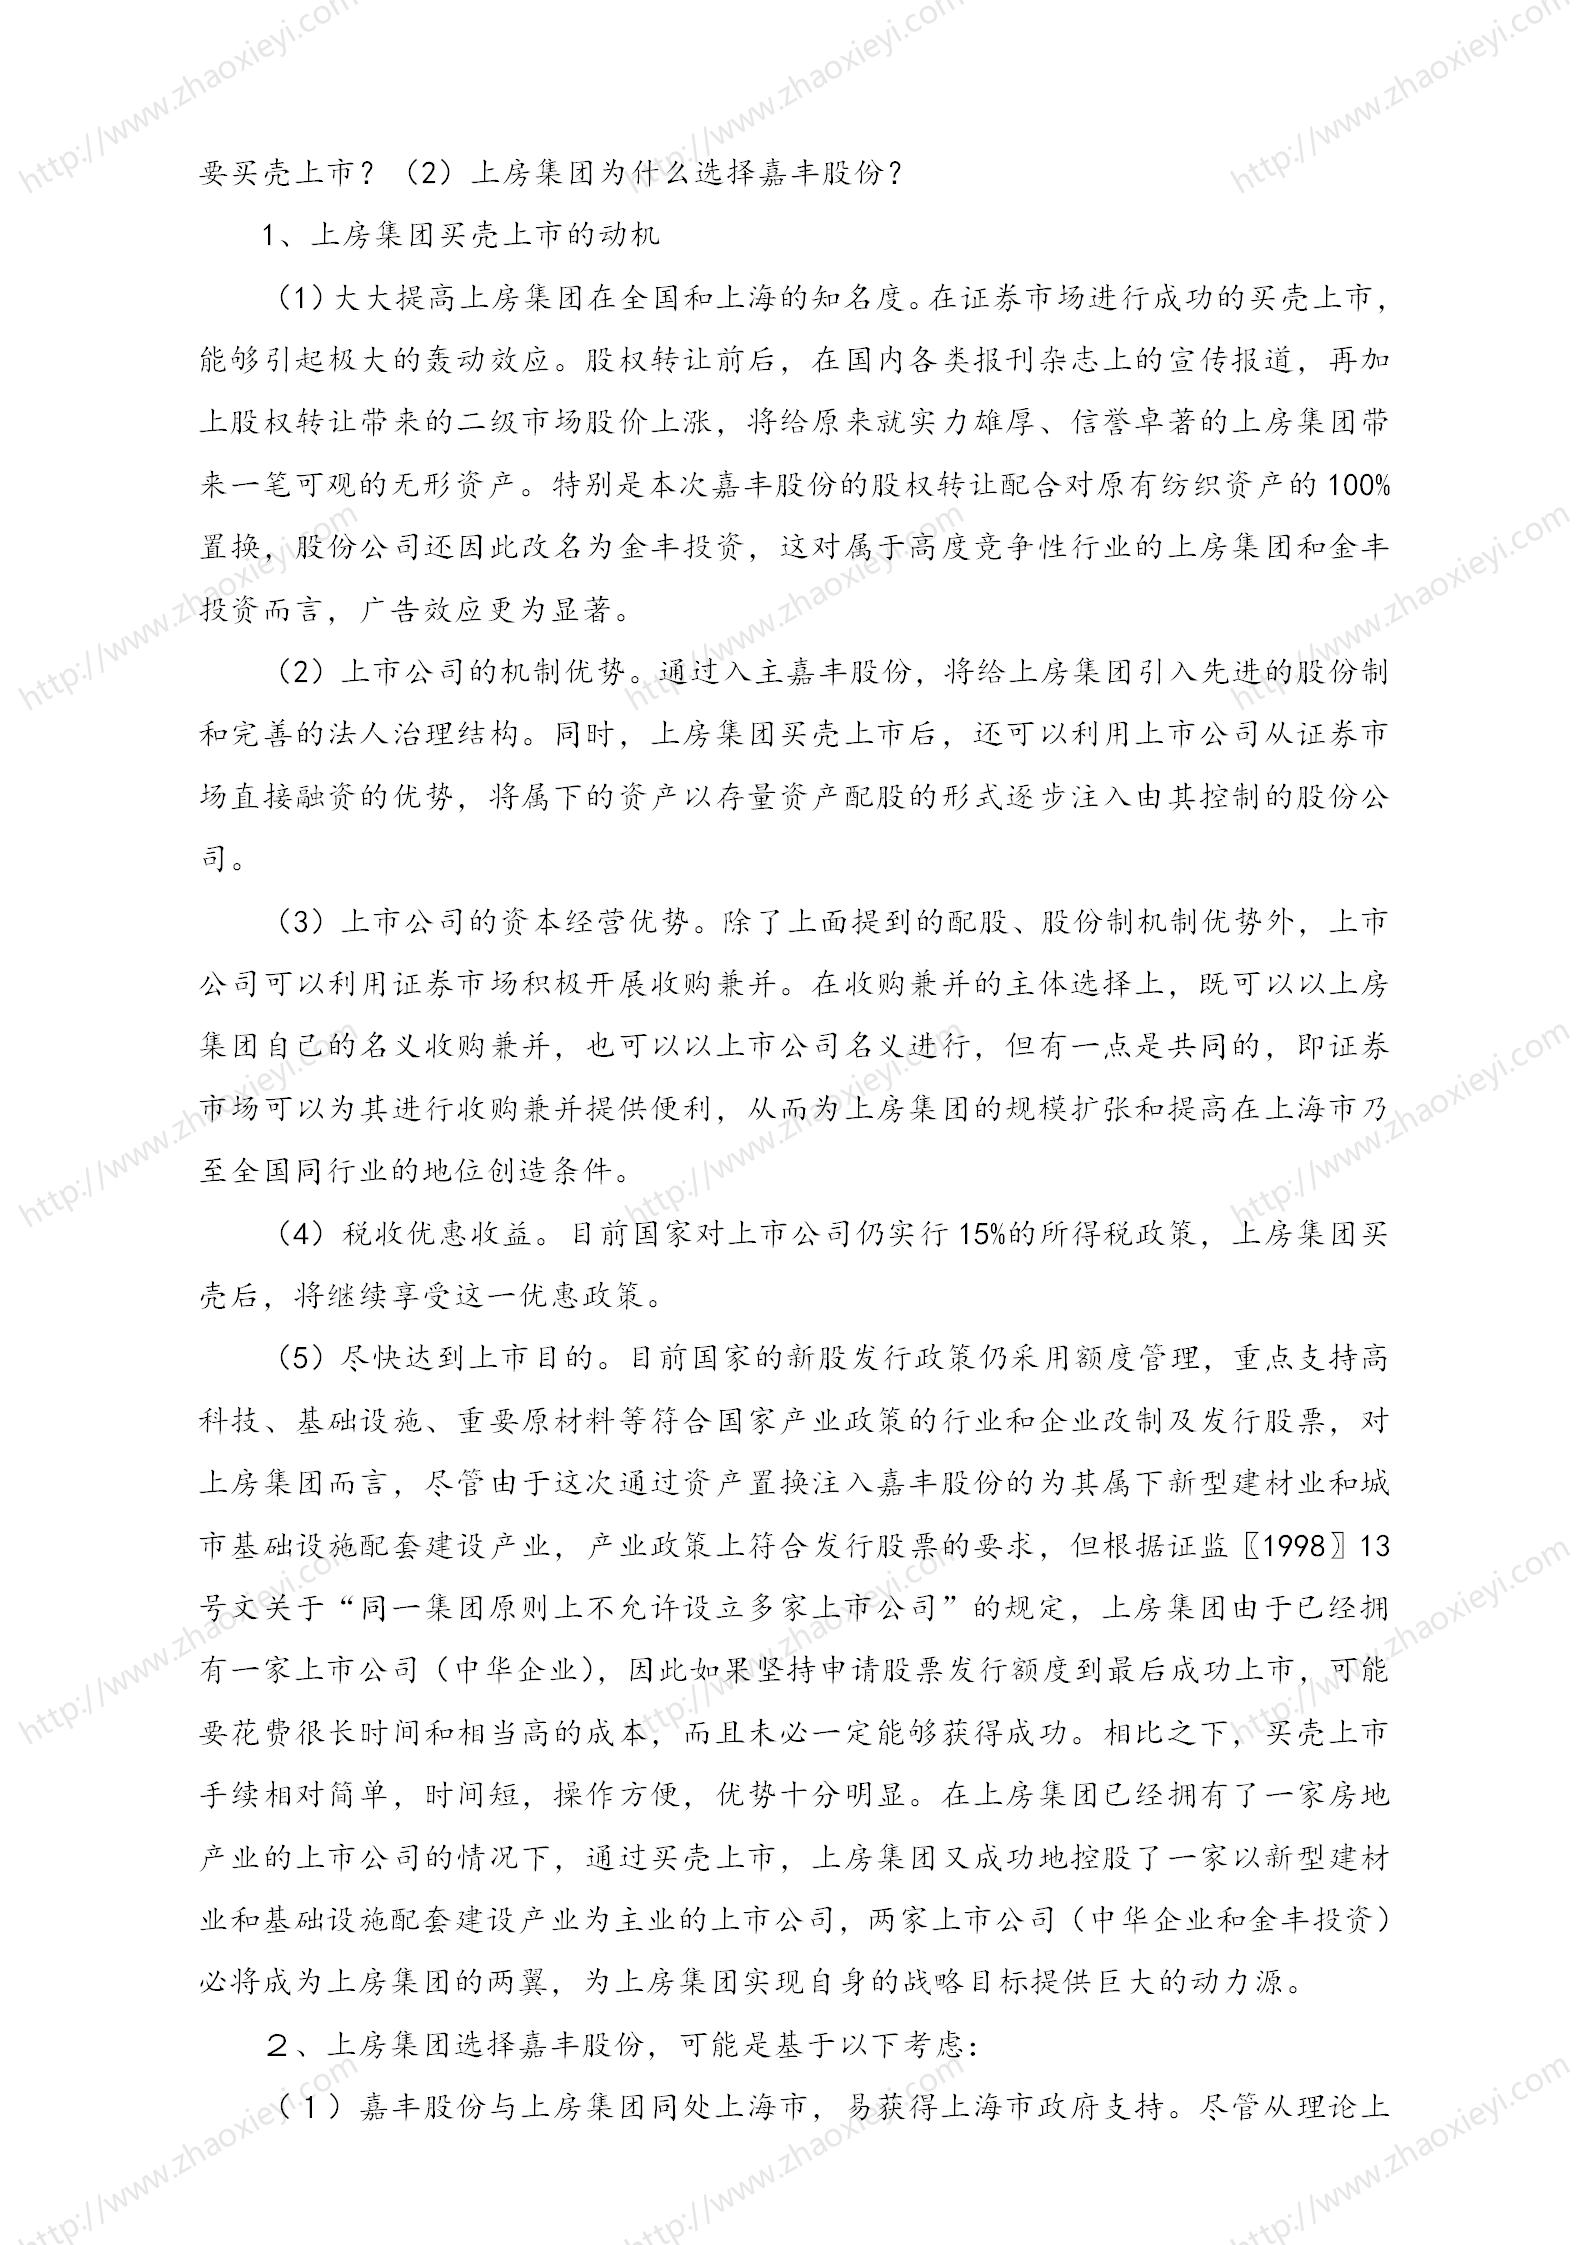 中国企业并购经典案例_108.jpg